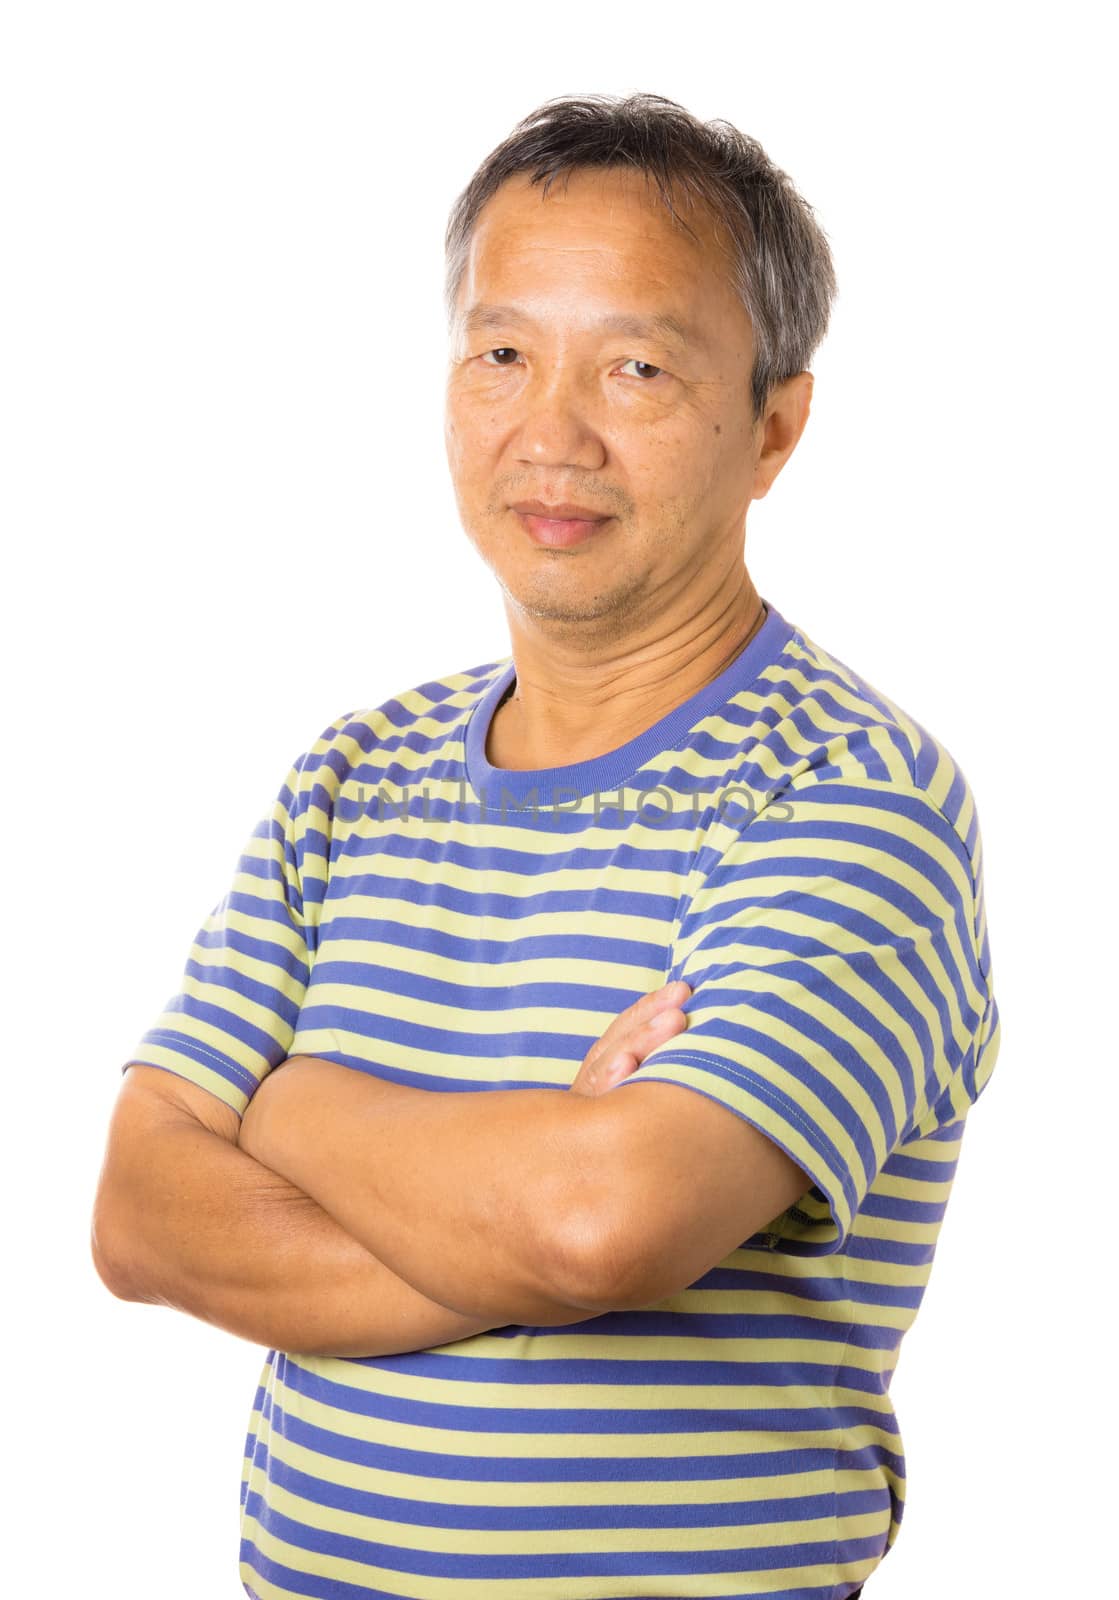 Asian mature man by leungchopan